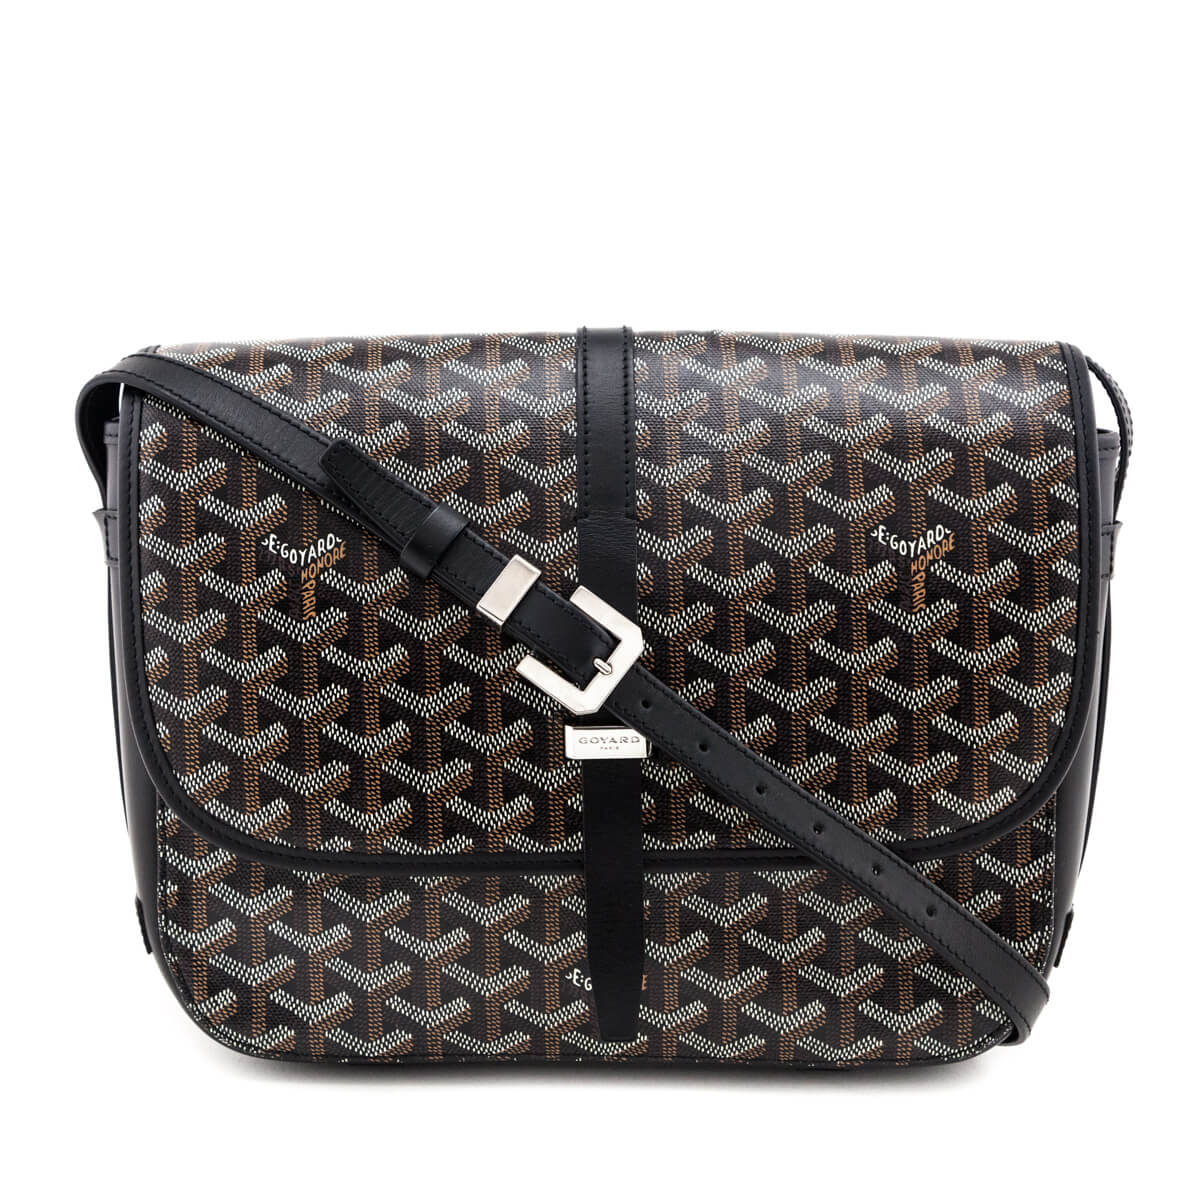 Goyard Goyardine Belvedere MM Messenger Bag - Black Shoulder Bags, Handbags  - GOY22210